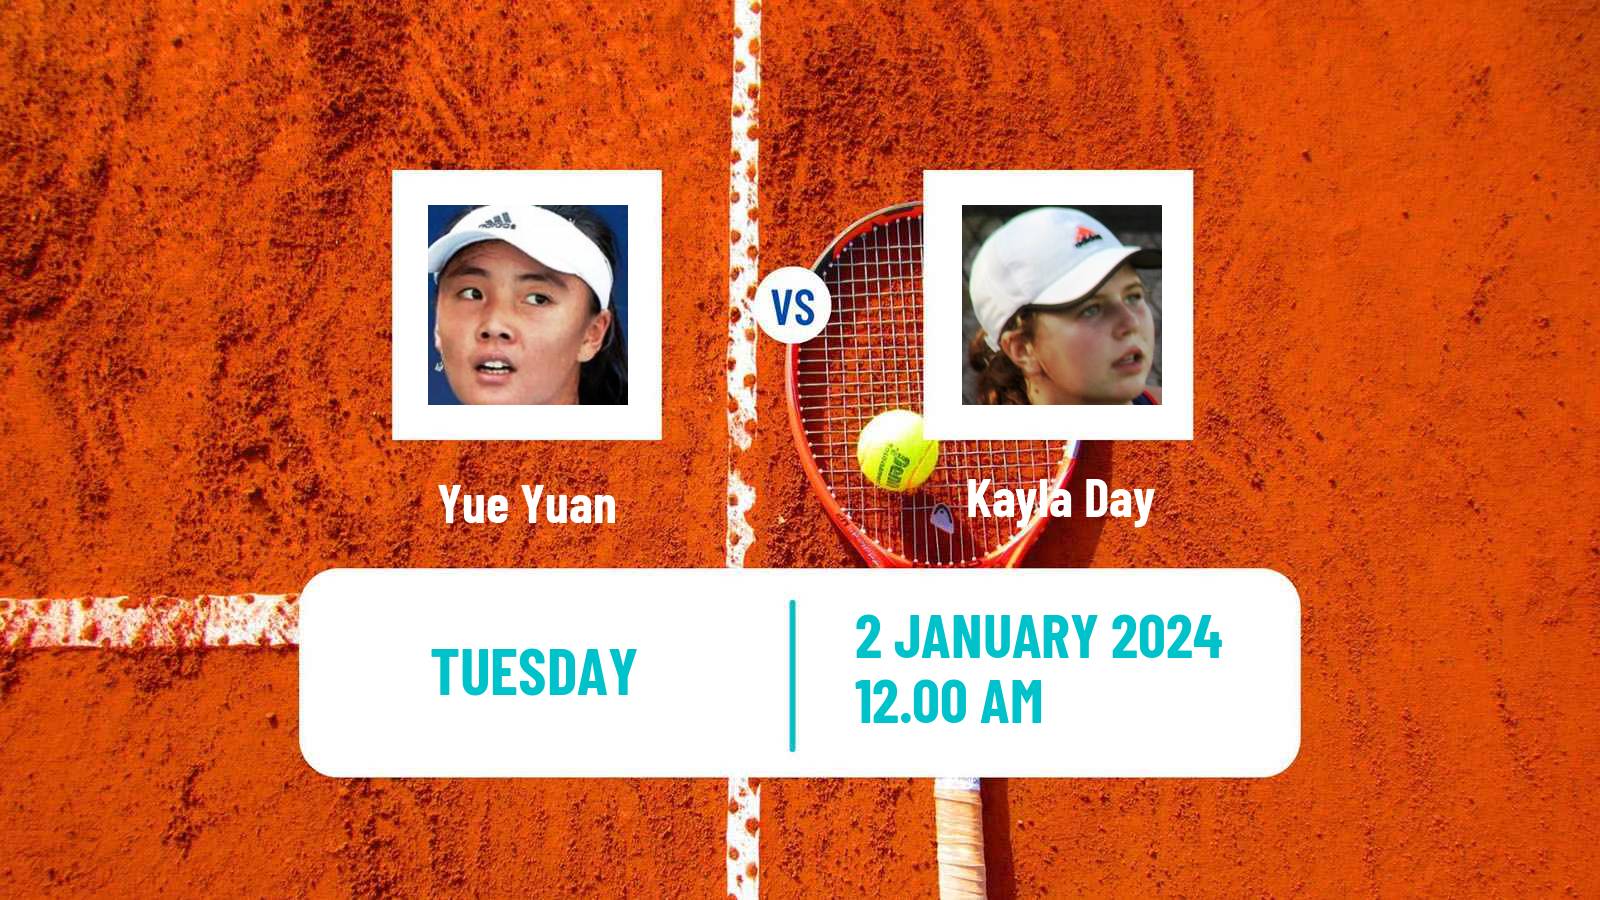 Tennis WTA Auckland Yue Yuan - Kayla Day